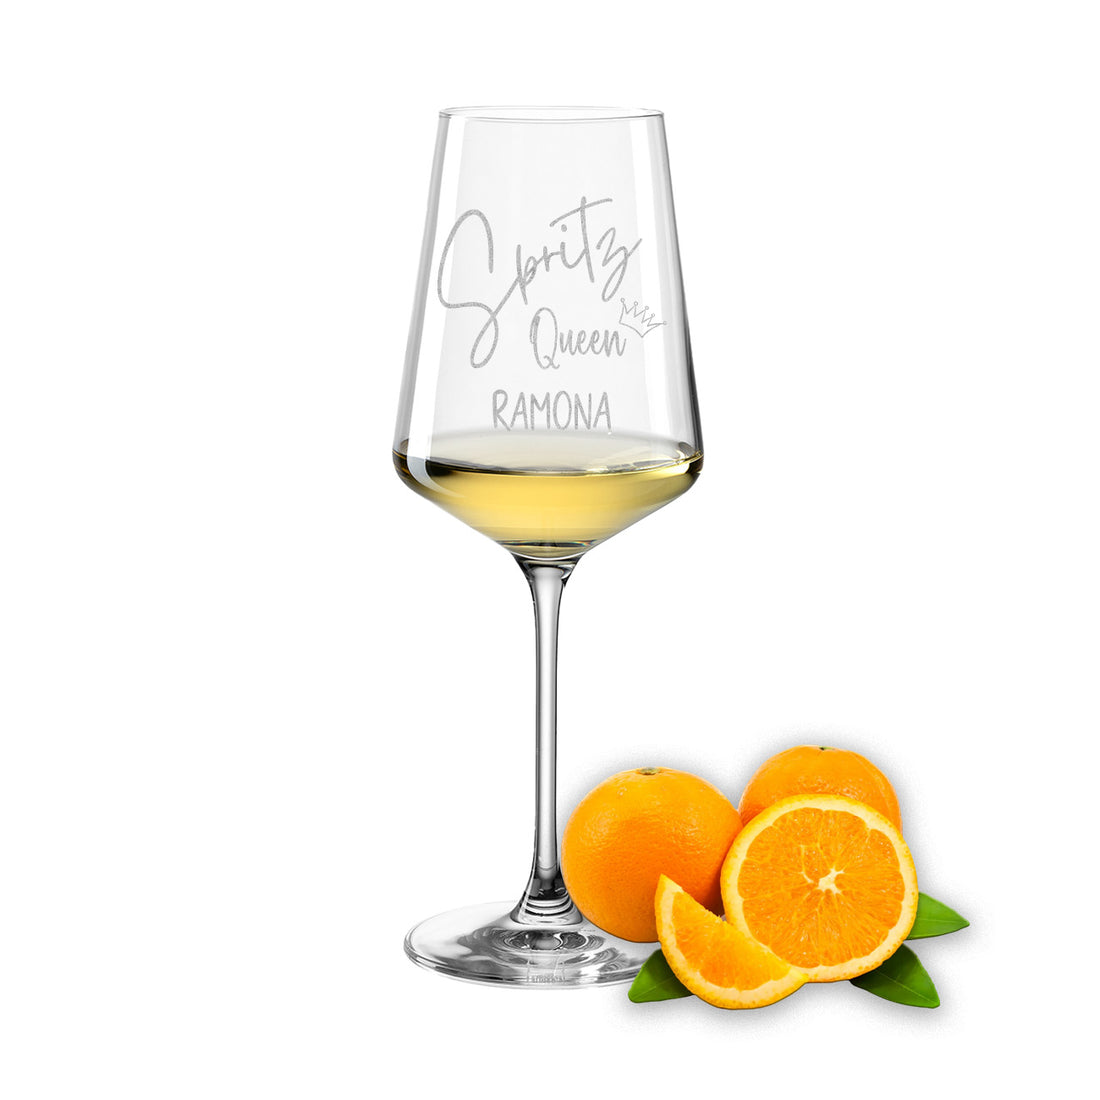 Weinglas mit Gravur Leonardo Puccini "SPRITZ QUEEN" mit Wunschname